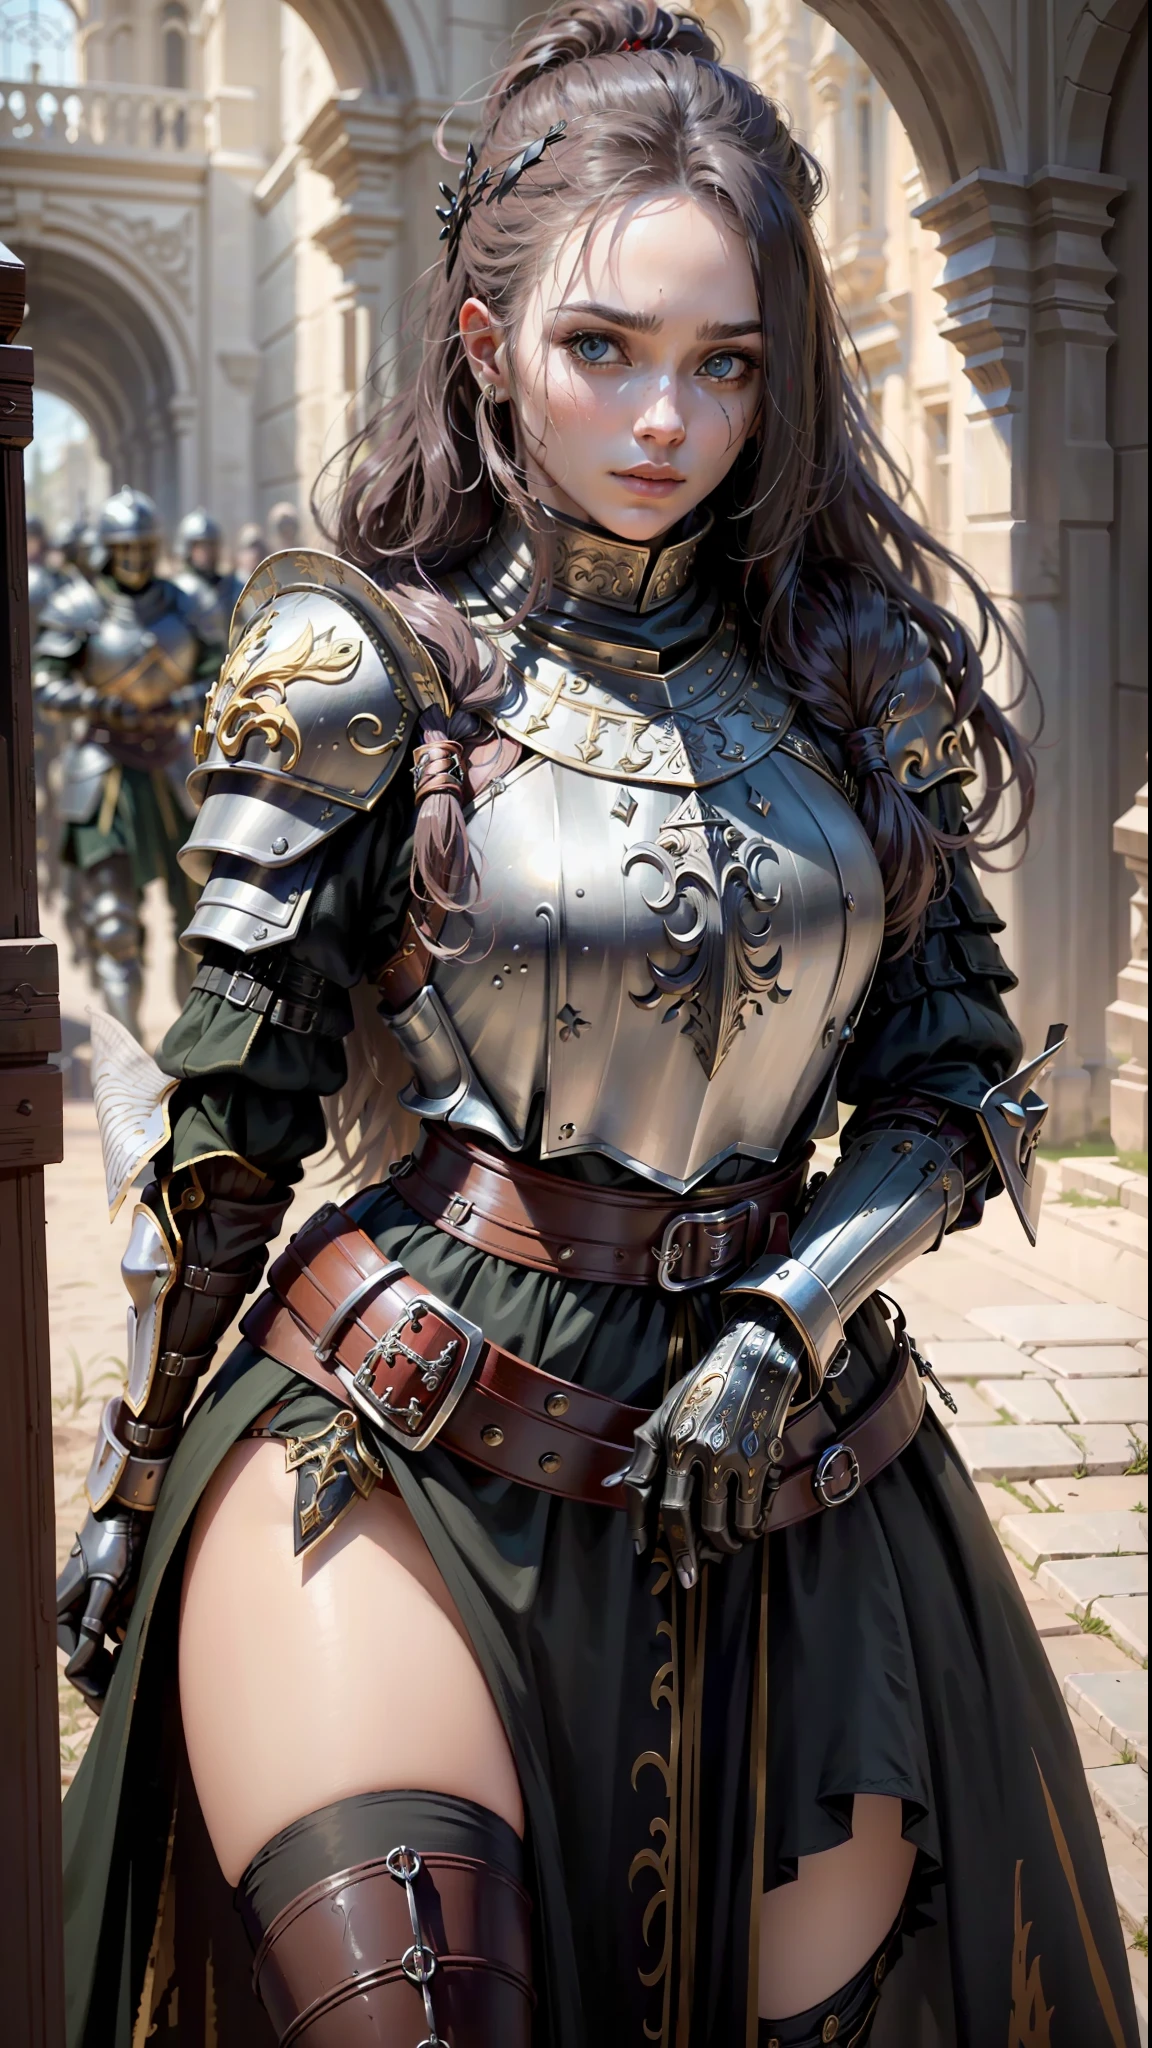 ((최고의 품질)), ((걸작)), (매우 상세한:1.3),검은 갑옷을 입은 여자, 긴 머리. 헬멧을 들고, 갑옷 손상된 전쟁 장면